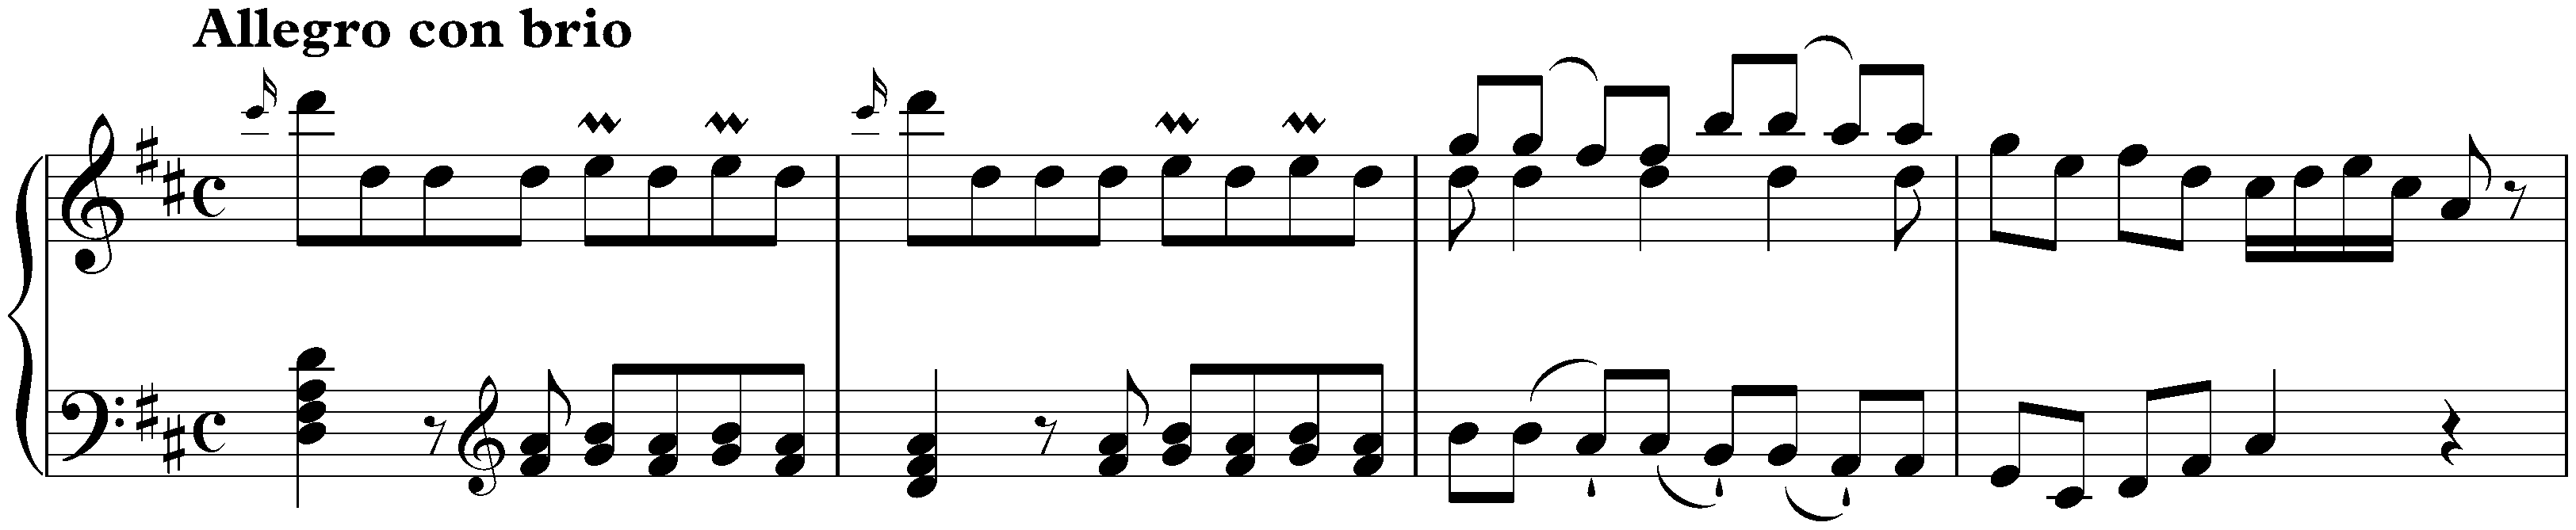 Sonata in D major, Hob. XVI:37; 1. Allegro con brio